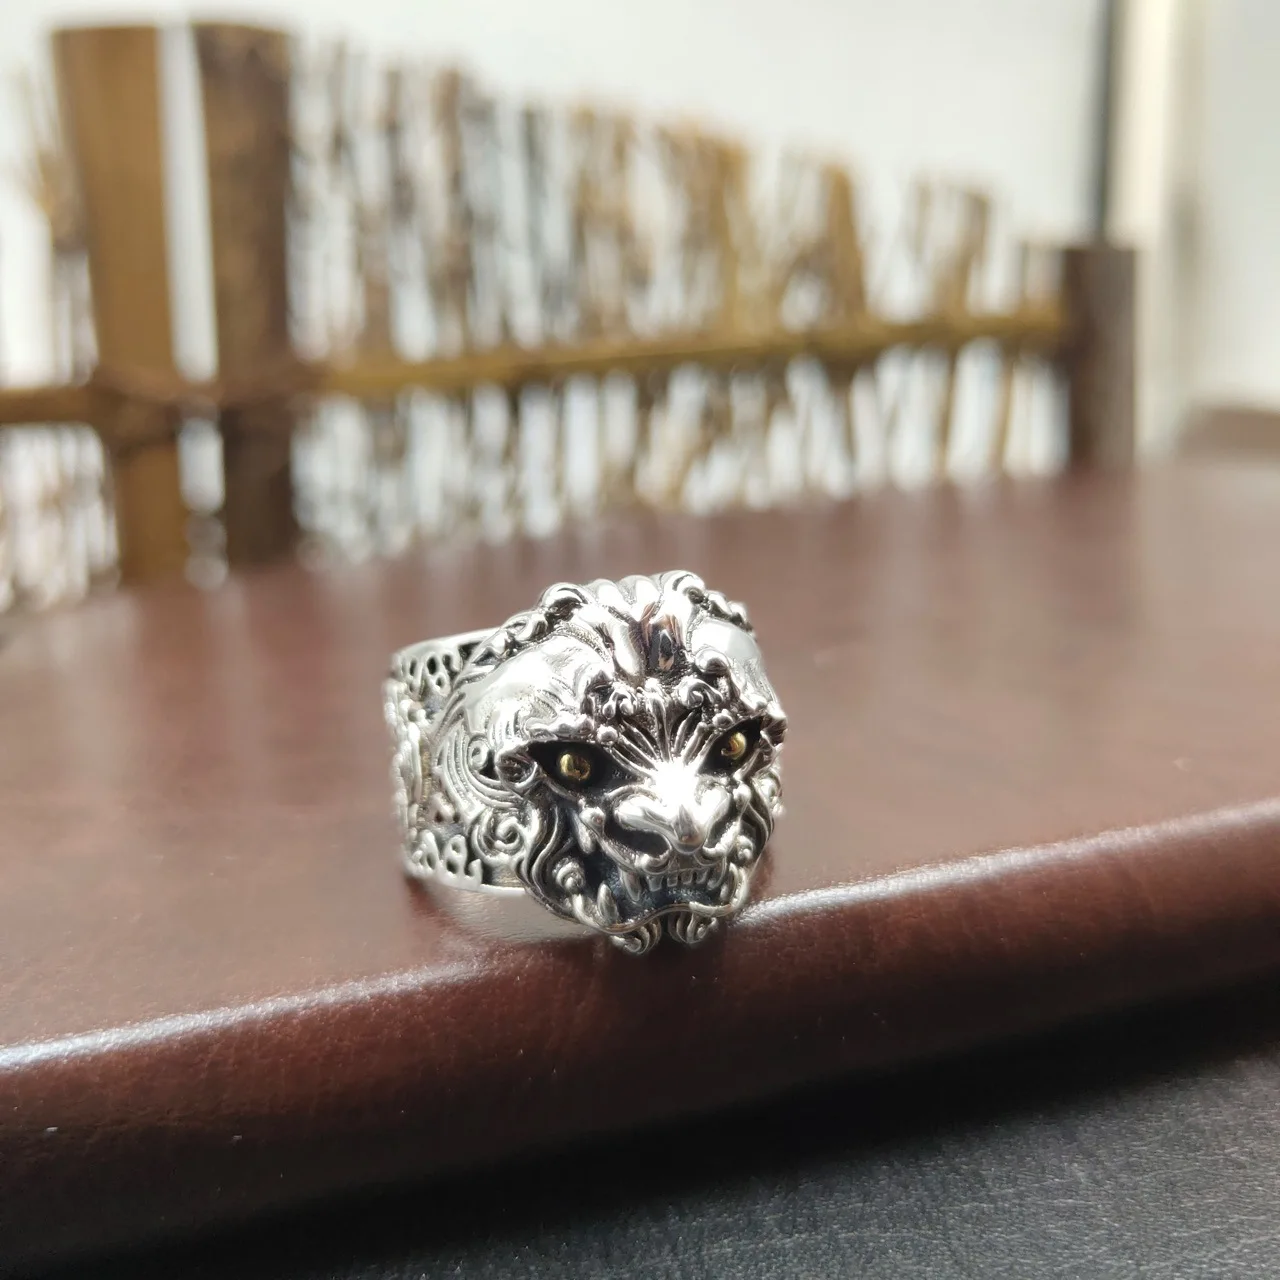 

Мужское Открытое кольцо Pixiu из серебра 925 пробы в стиле ретро, агрессивное кольцо из тайского серебра с персонализированным переводным указательным пальцем